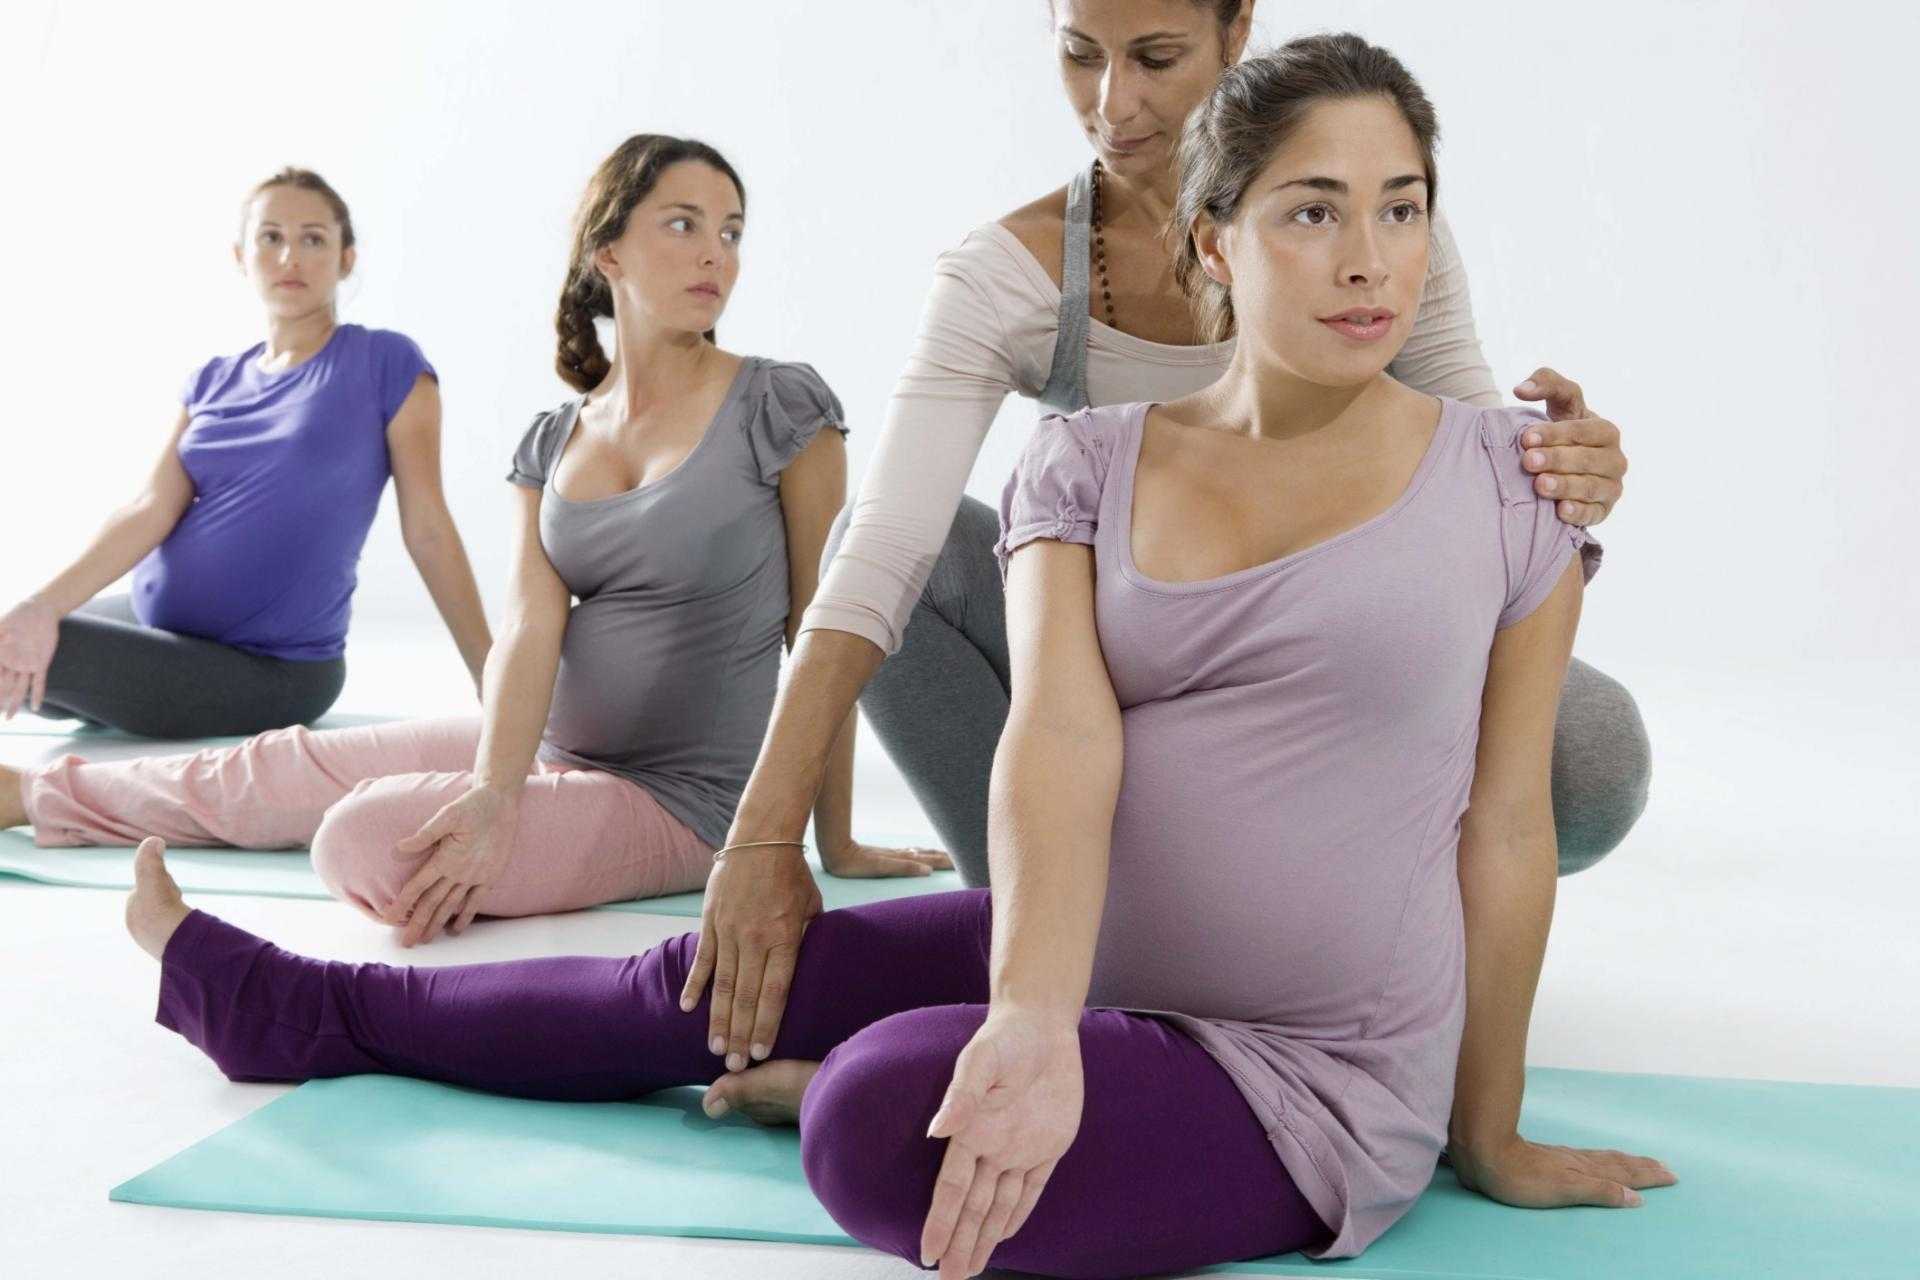 Йога при беременности (на 1, 2 или 3 триместре): можно ли заниматься, польза, упражнения и другие особенности + видео